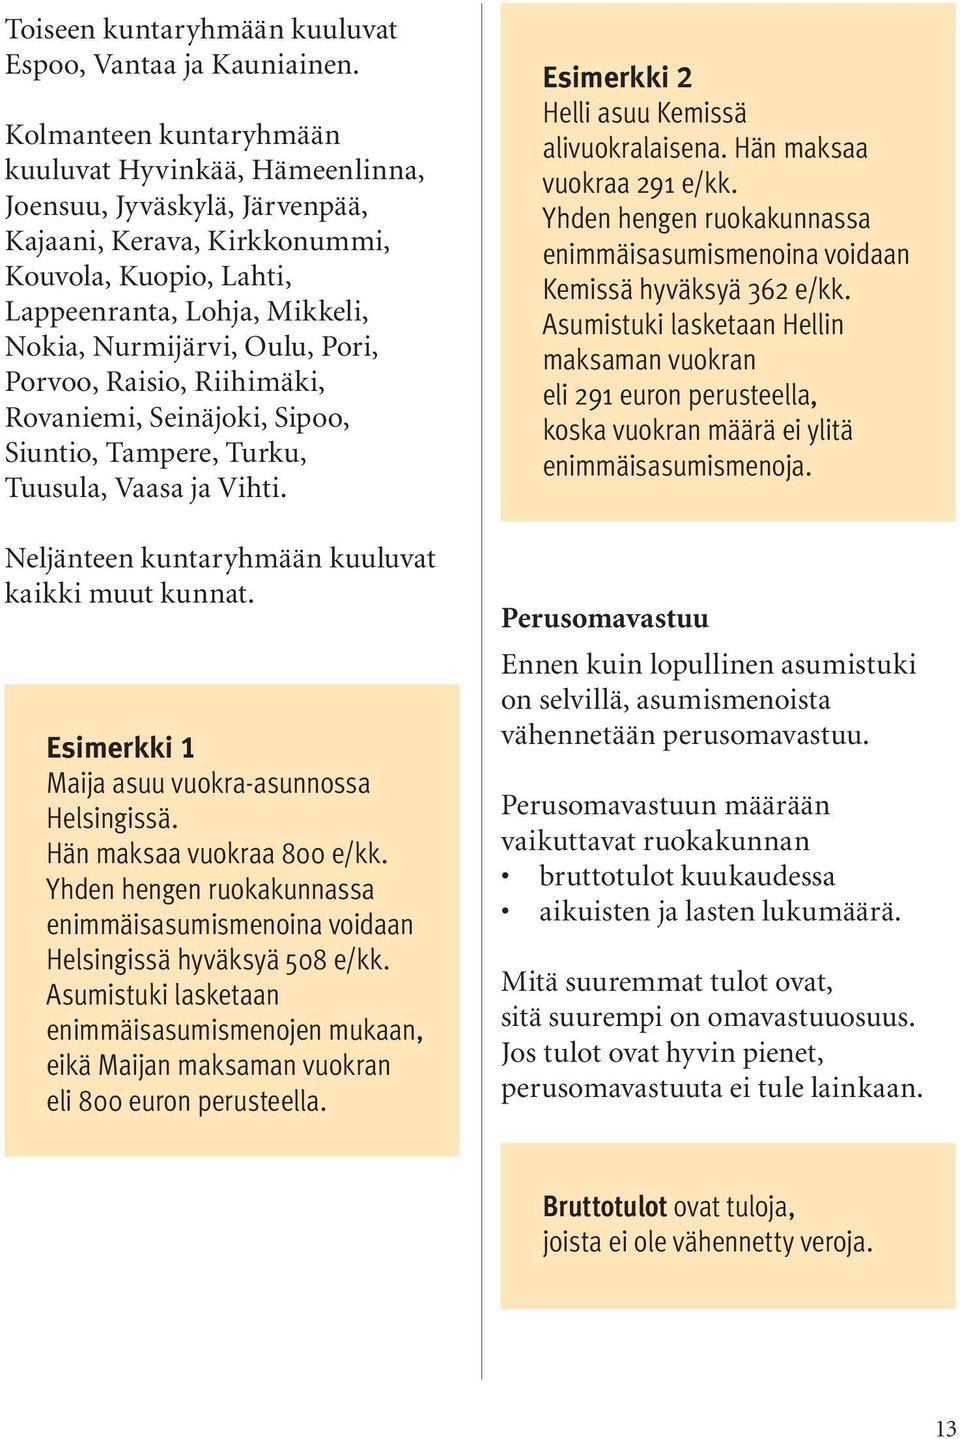 Pori, Porvoo, Raisio, Riihimäki, Rovaniemi, Seinäjoki, Sipoo, Siuntio, Tampere, Turku, Tuusula, Vaasa ja Vihti. Neljänteen kuntaryhmään kuuluvat kaikki muut kunnat.